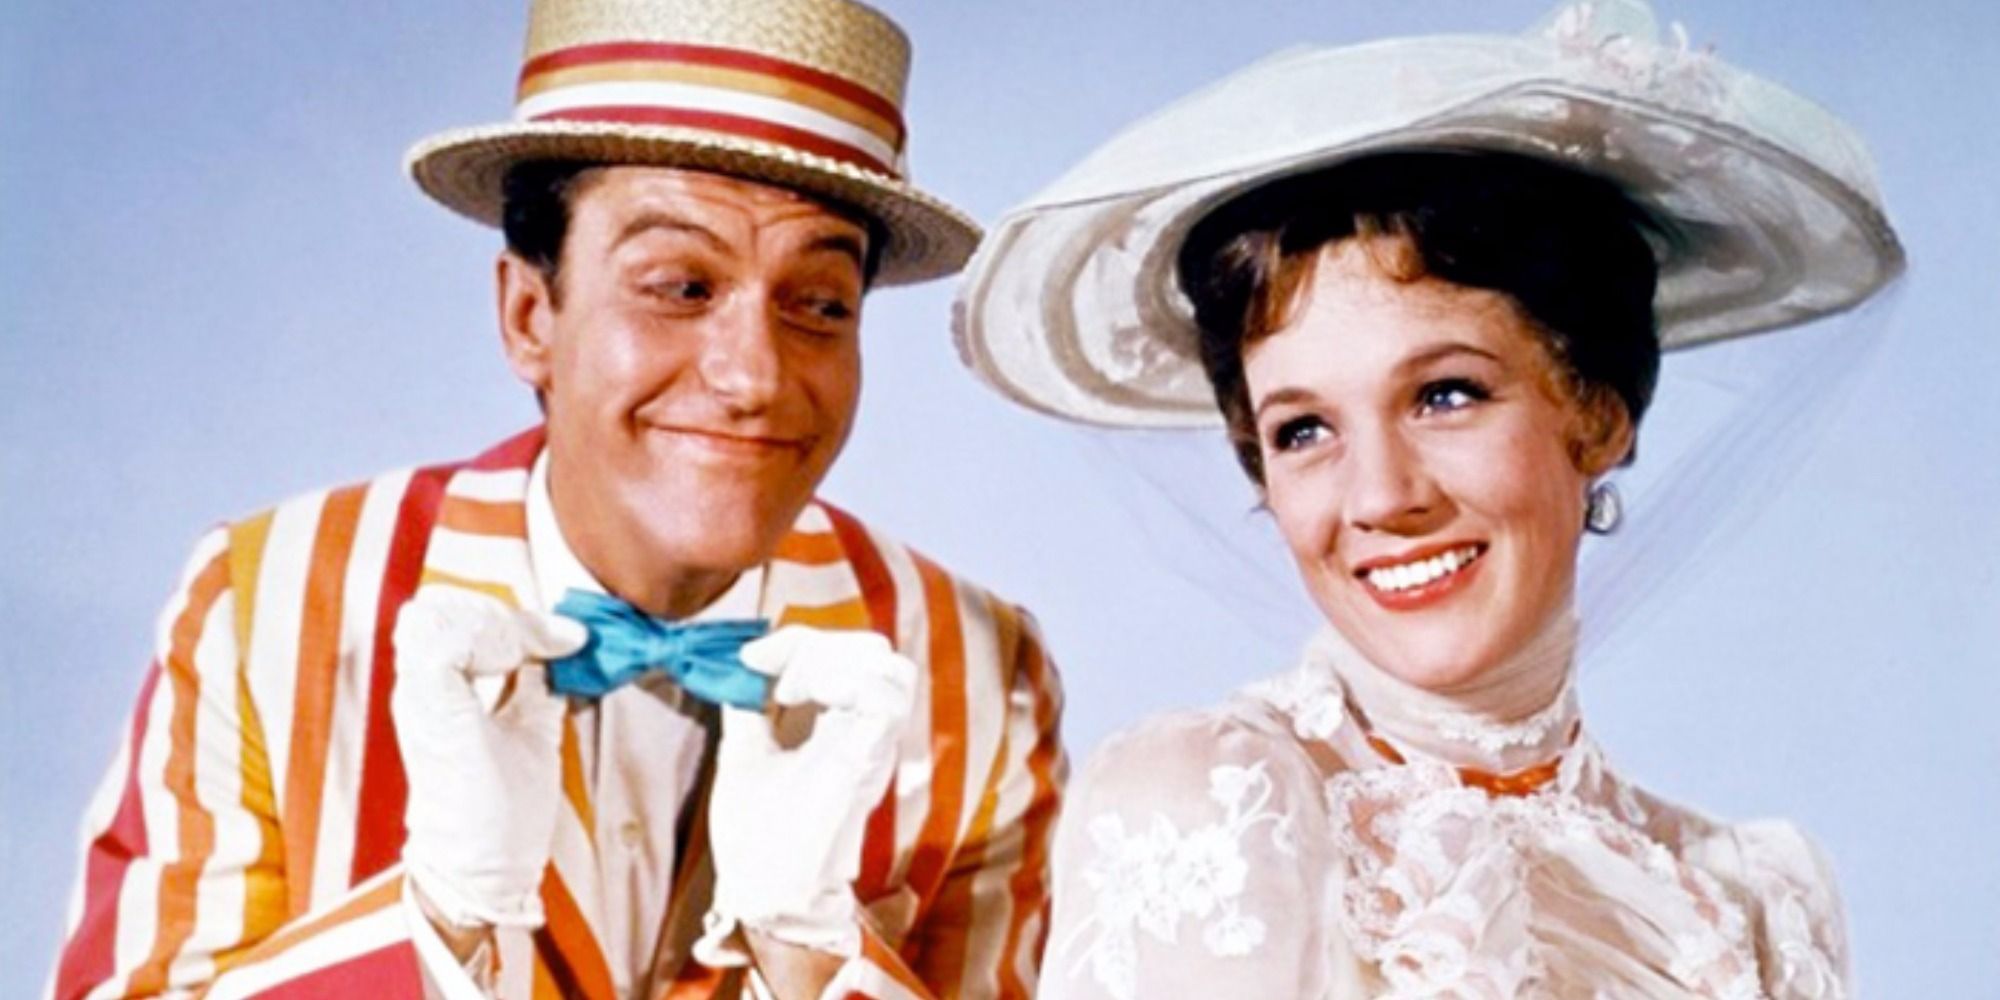 Bert e Mary Poppins aparecem antes da música 